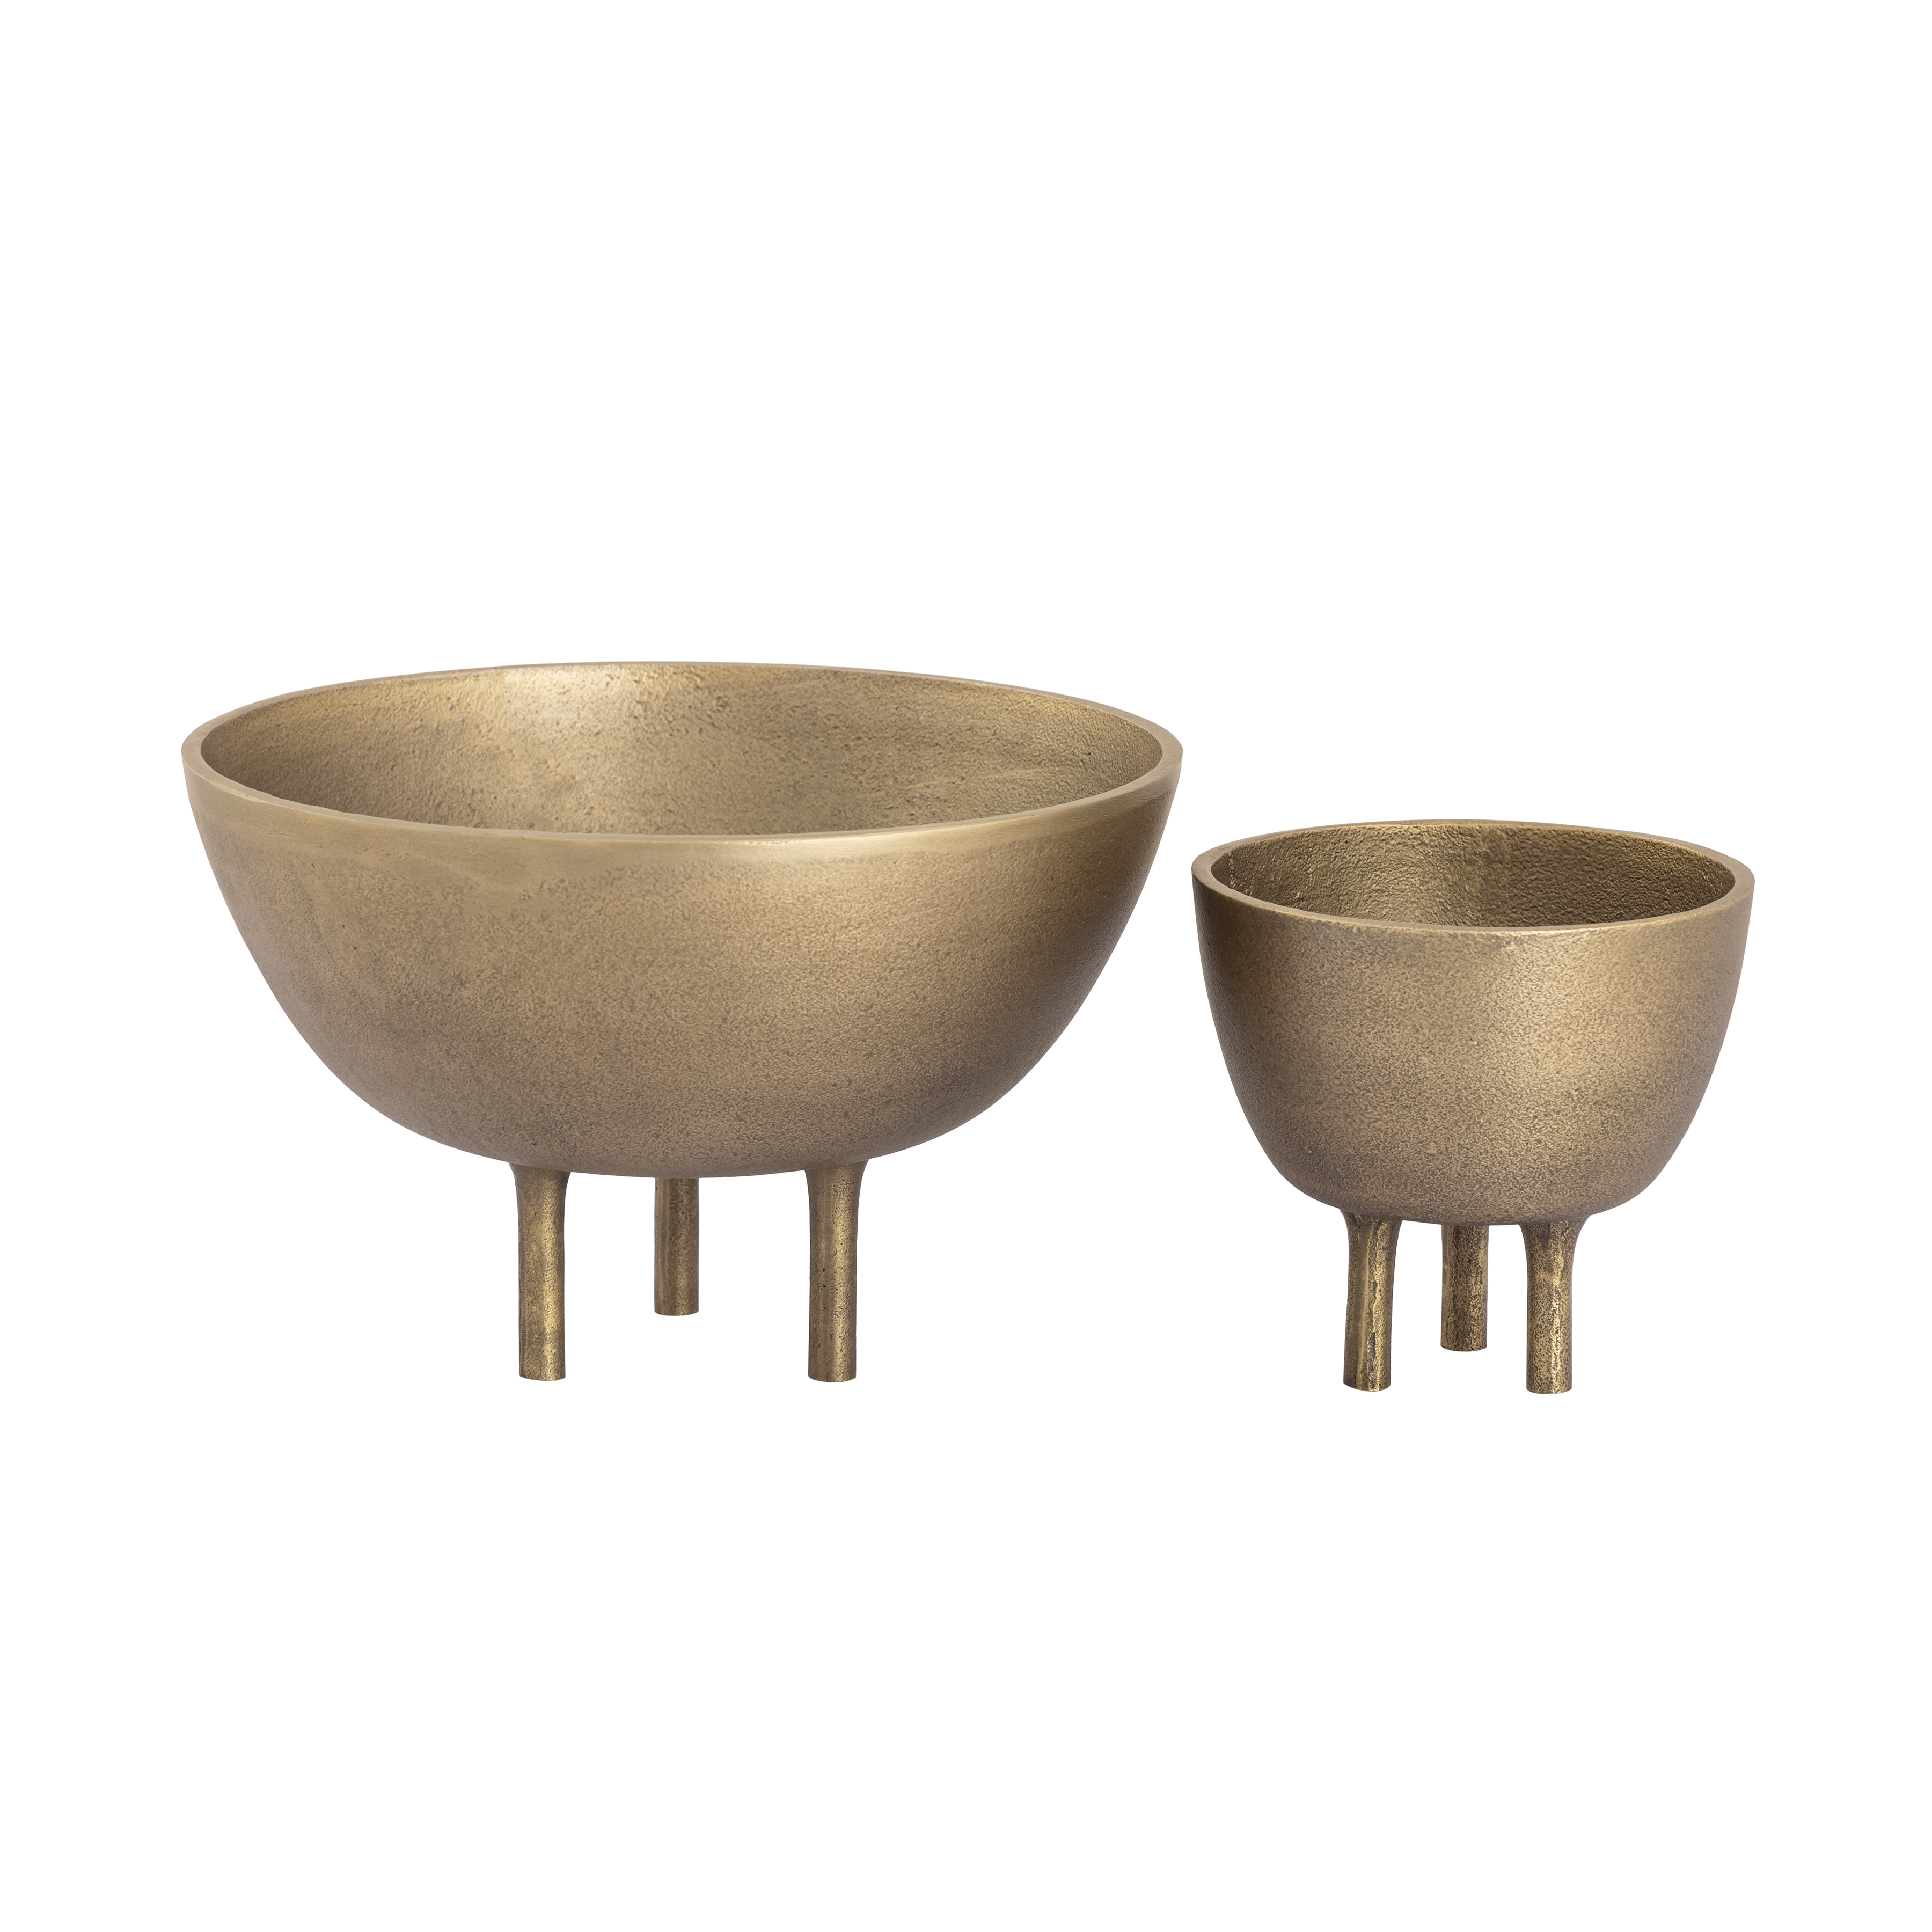 Kiser Bowl - Small Brass - Image 3